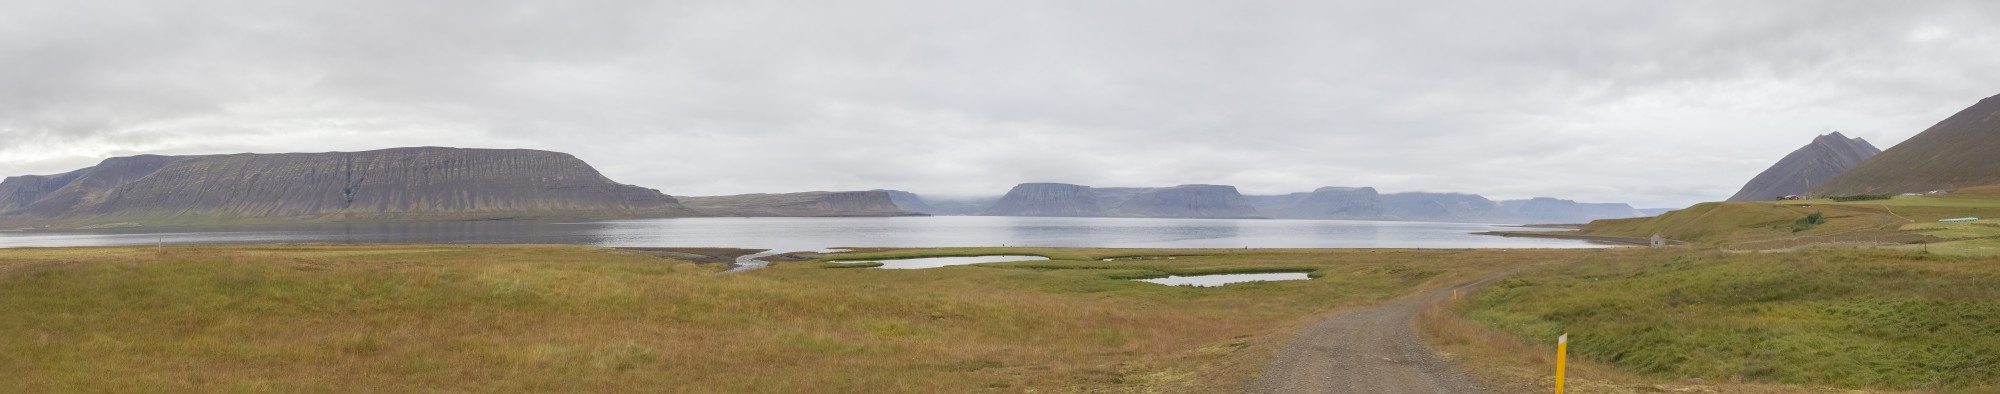 Arnarfjörður, Vestfirðir, Islandia, 2014-08-15, DD 028 PAN